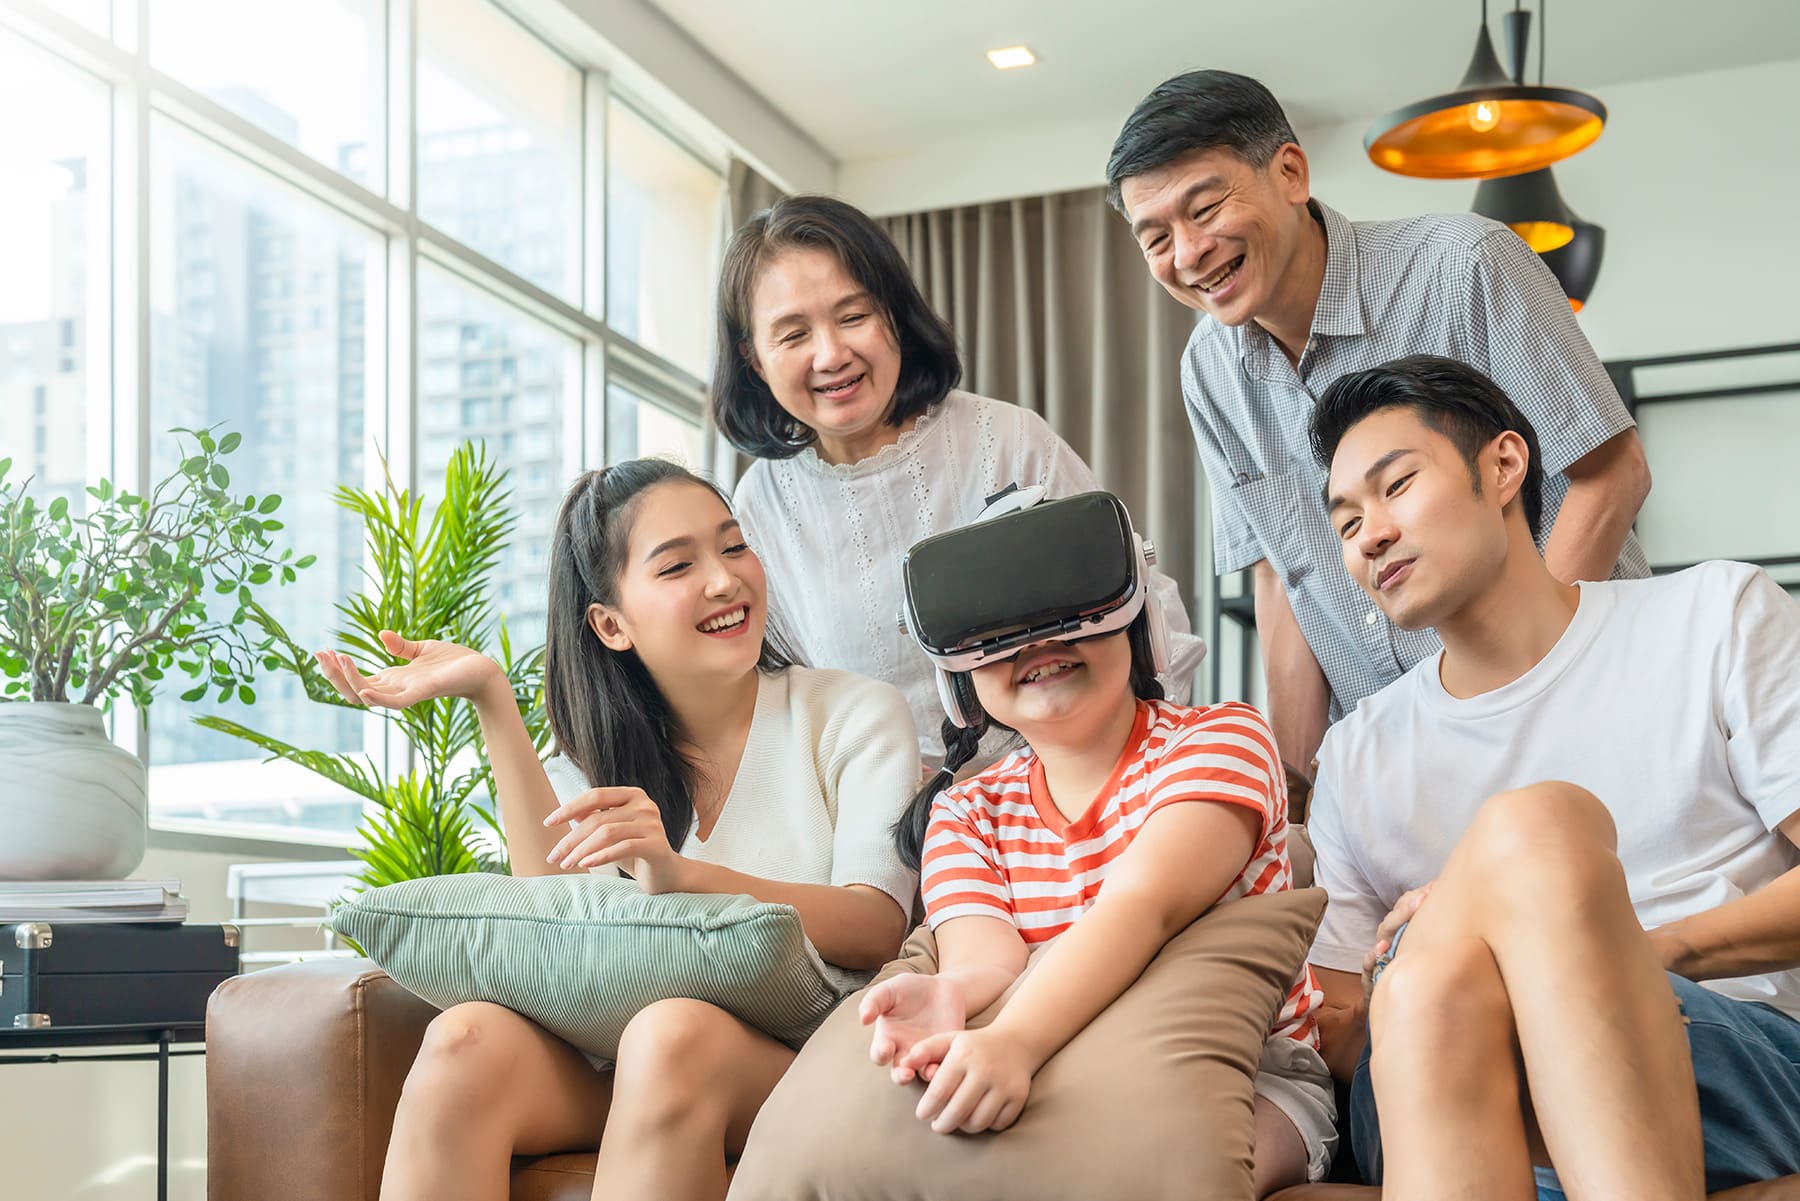 Singapore citizen bonding with family - SGIP